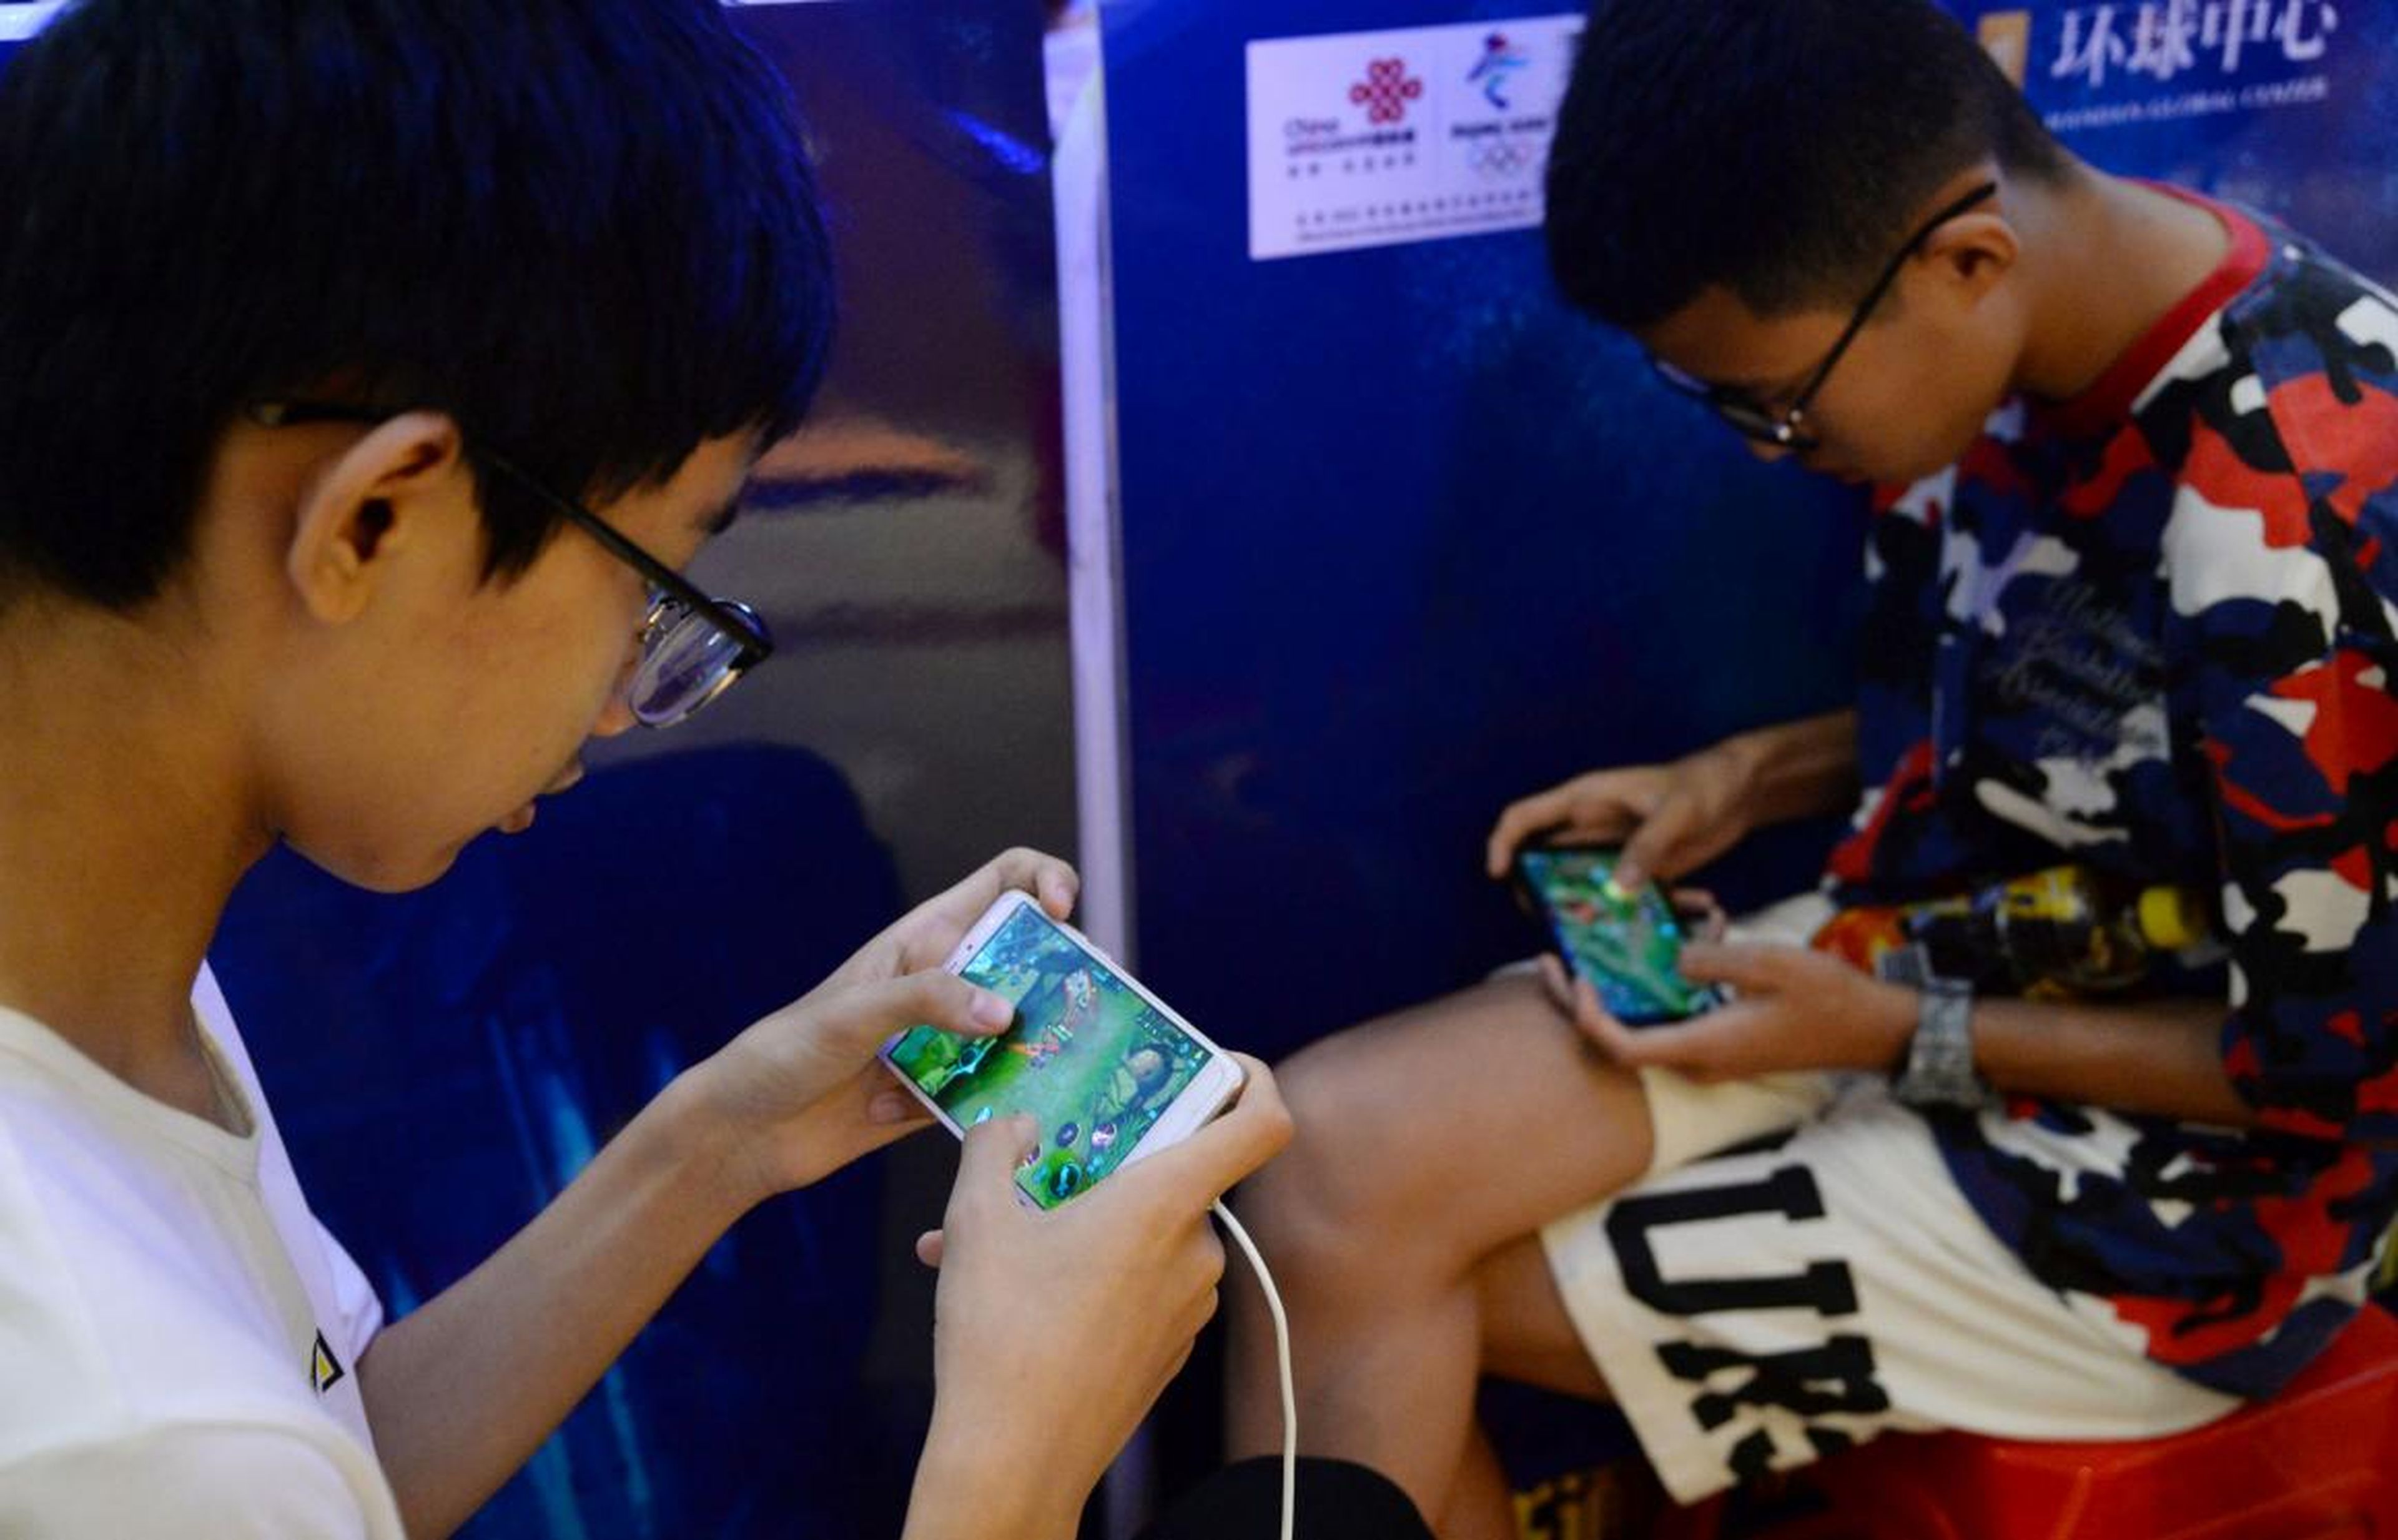 Dos jóvenes jugadores en China jugando al "Honor of Kings" de Tencent en sus móviles.